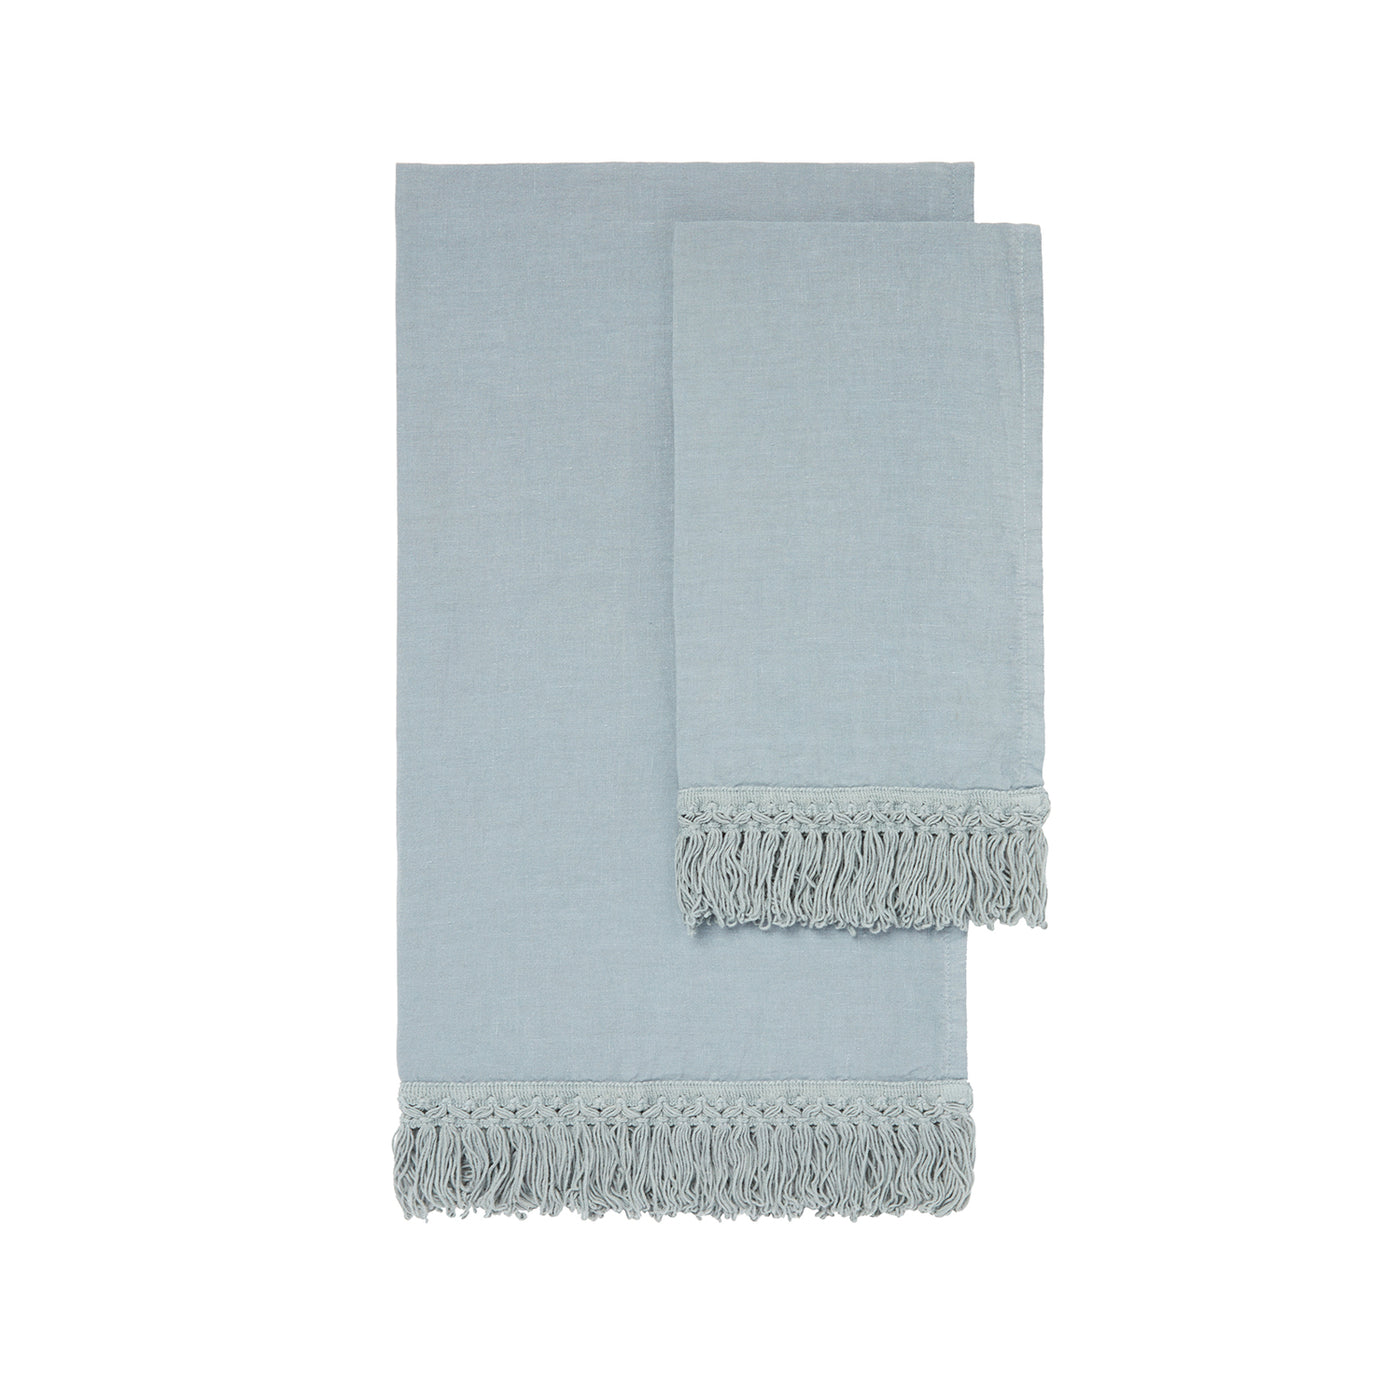 Luxusní lněné ručníky Once Milano v modré barvě, Romein concept store, Lněné ručníky, minimalistické doplňky do koupelny, koupelnové doplňky